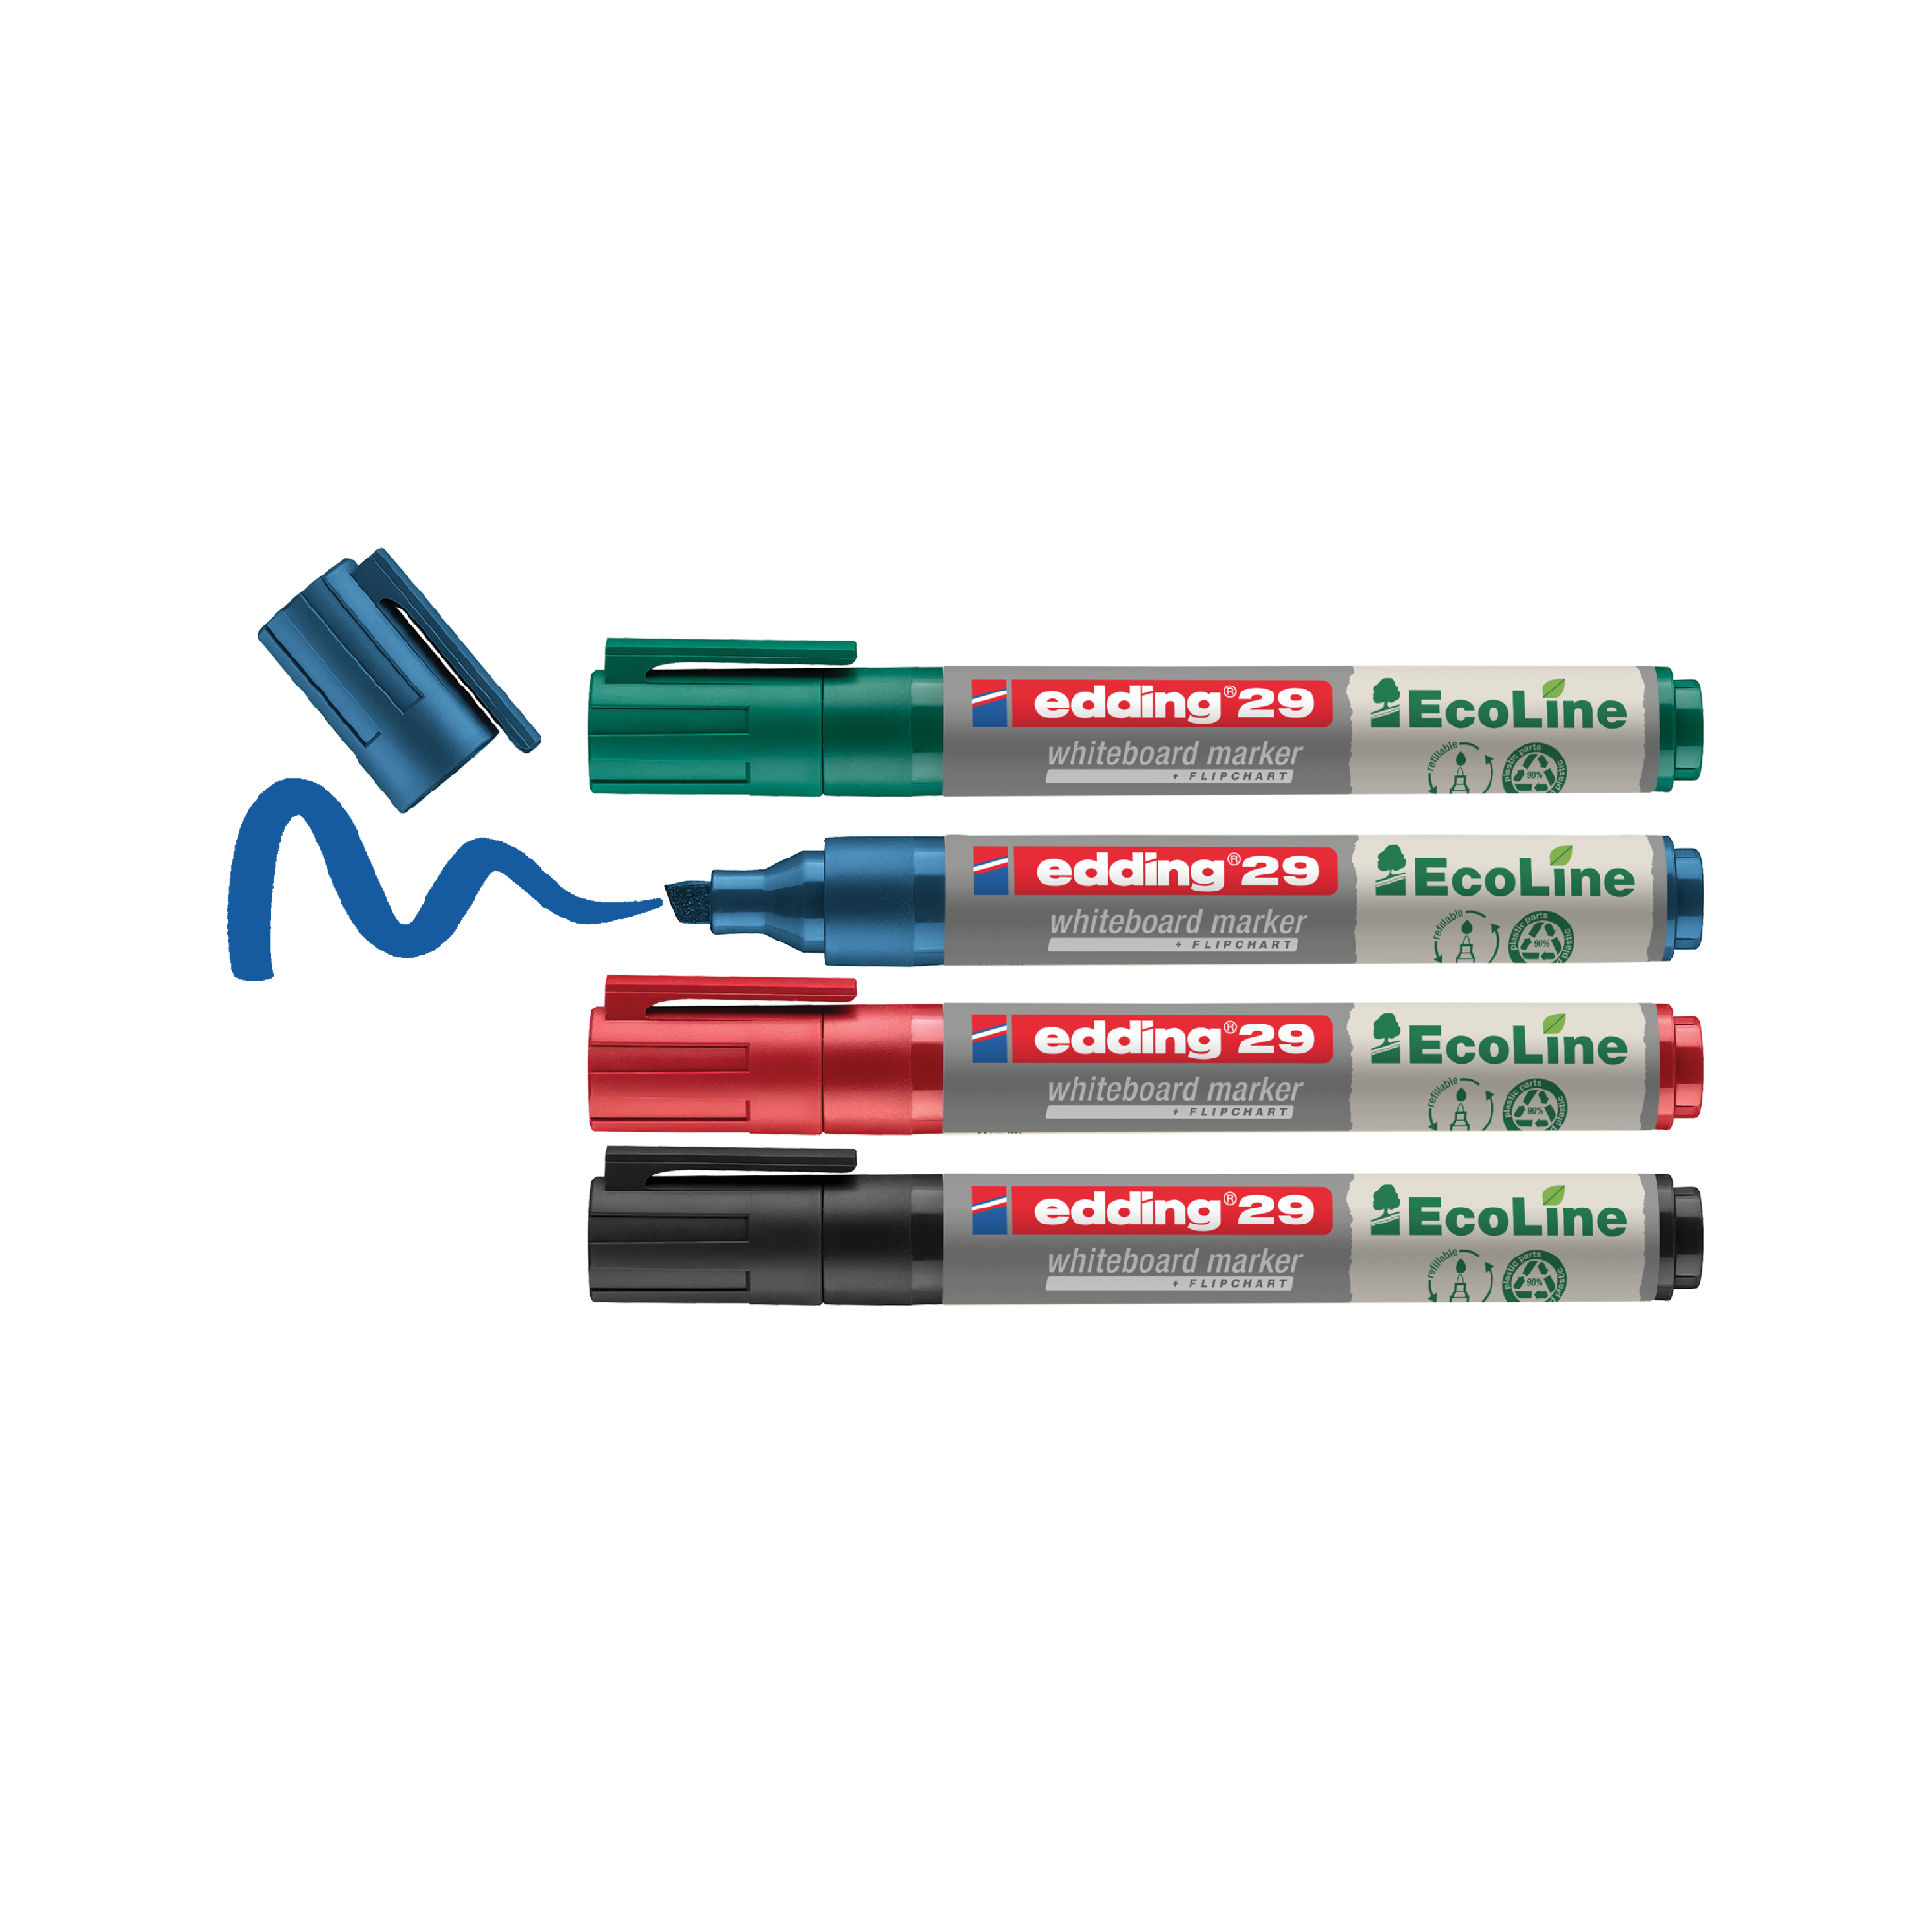 Ein Set aus vier edding 29 EcoLine Whiteboardmarkern im 4er-Set in den Farben Grün, Rot, Blau und Schwarz, wobei die Kappen entfernt wurden und der blaue Marker ein Gekritzel hinterlässt